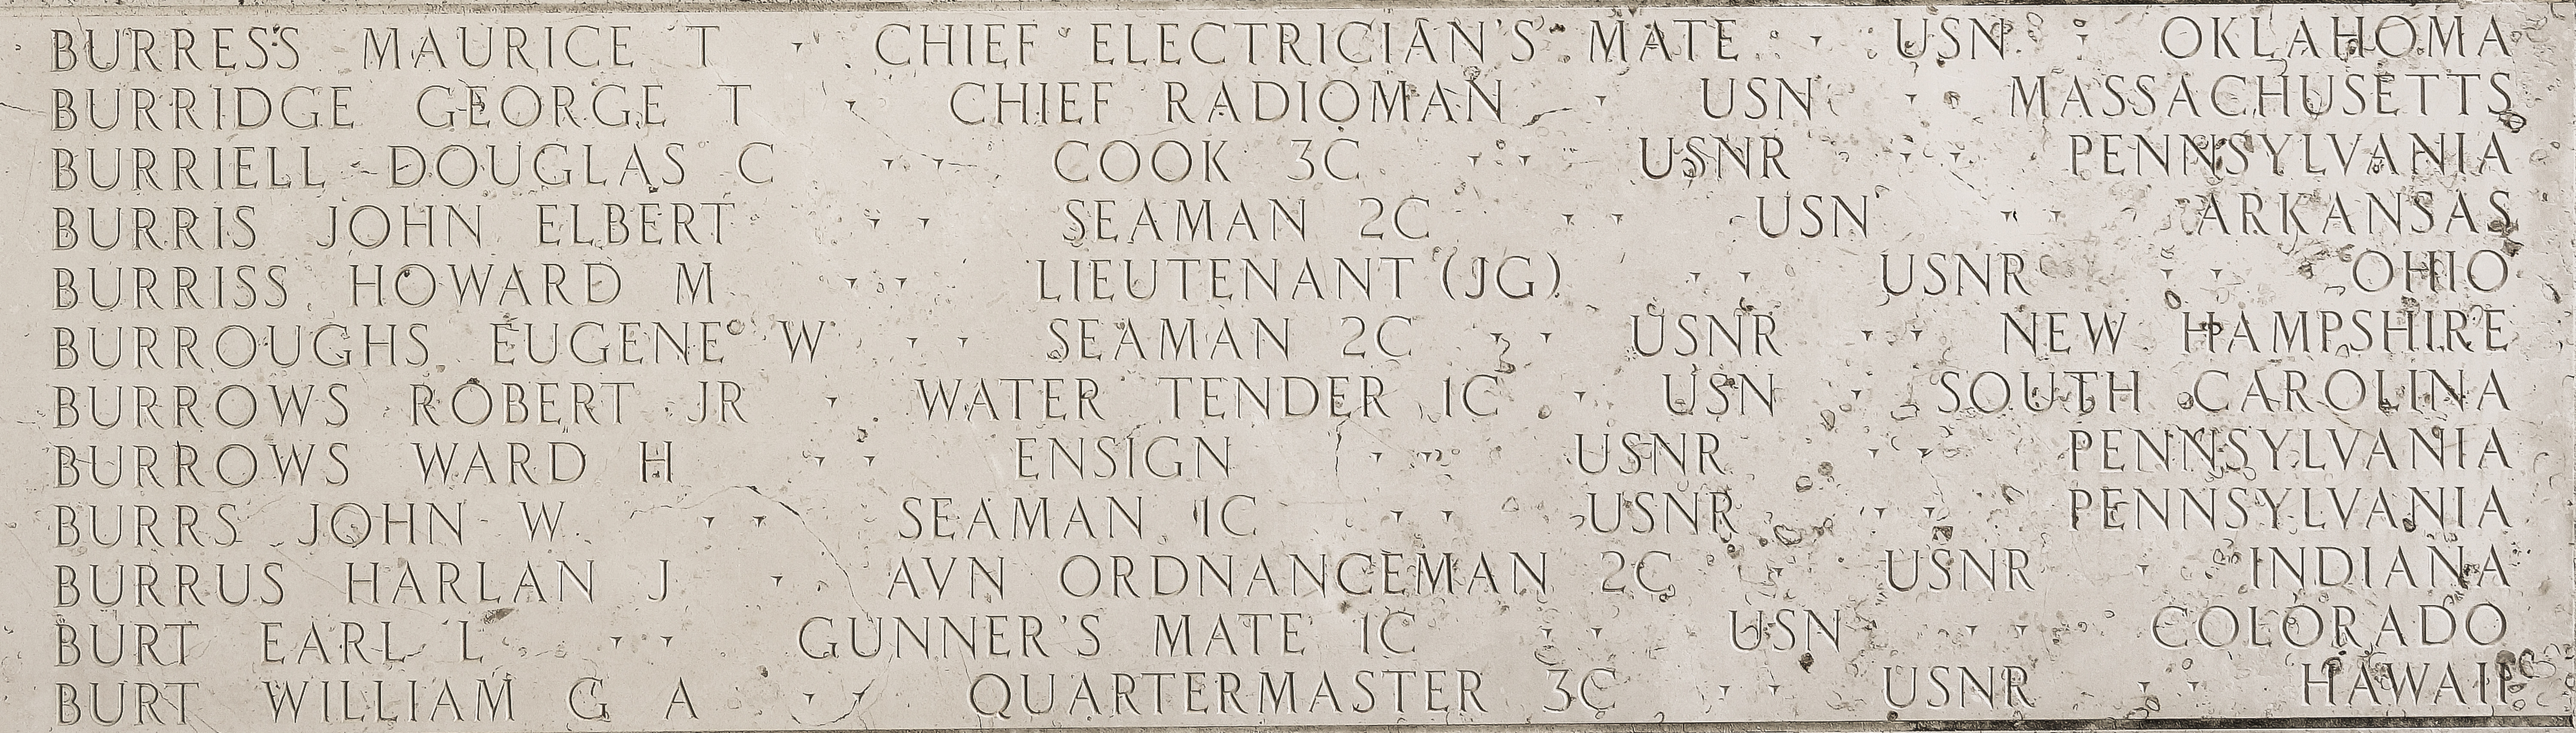 William G. A. Burt, Quartermaster Third Class